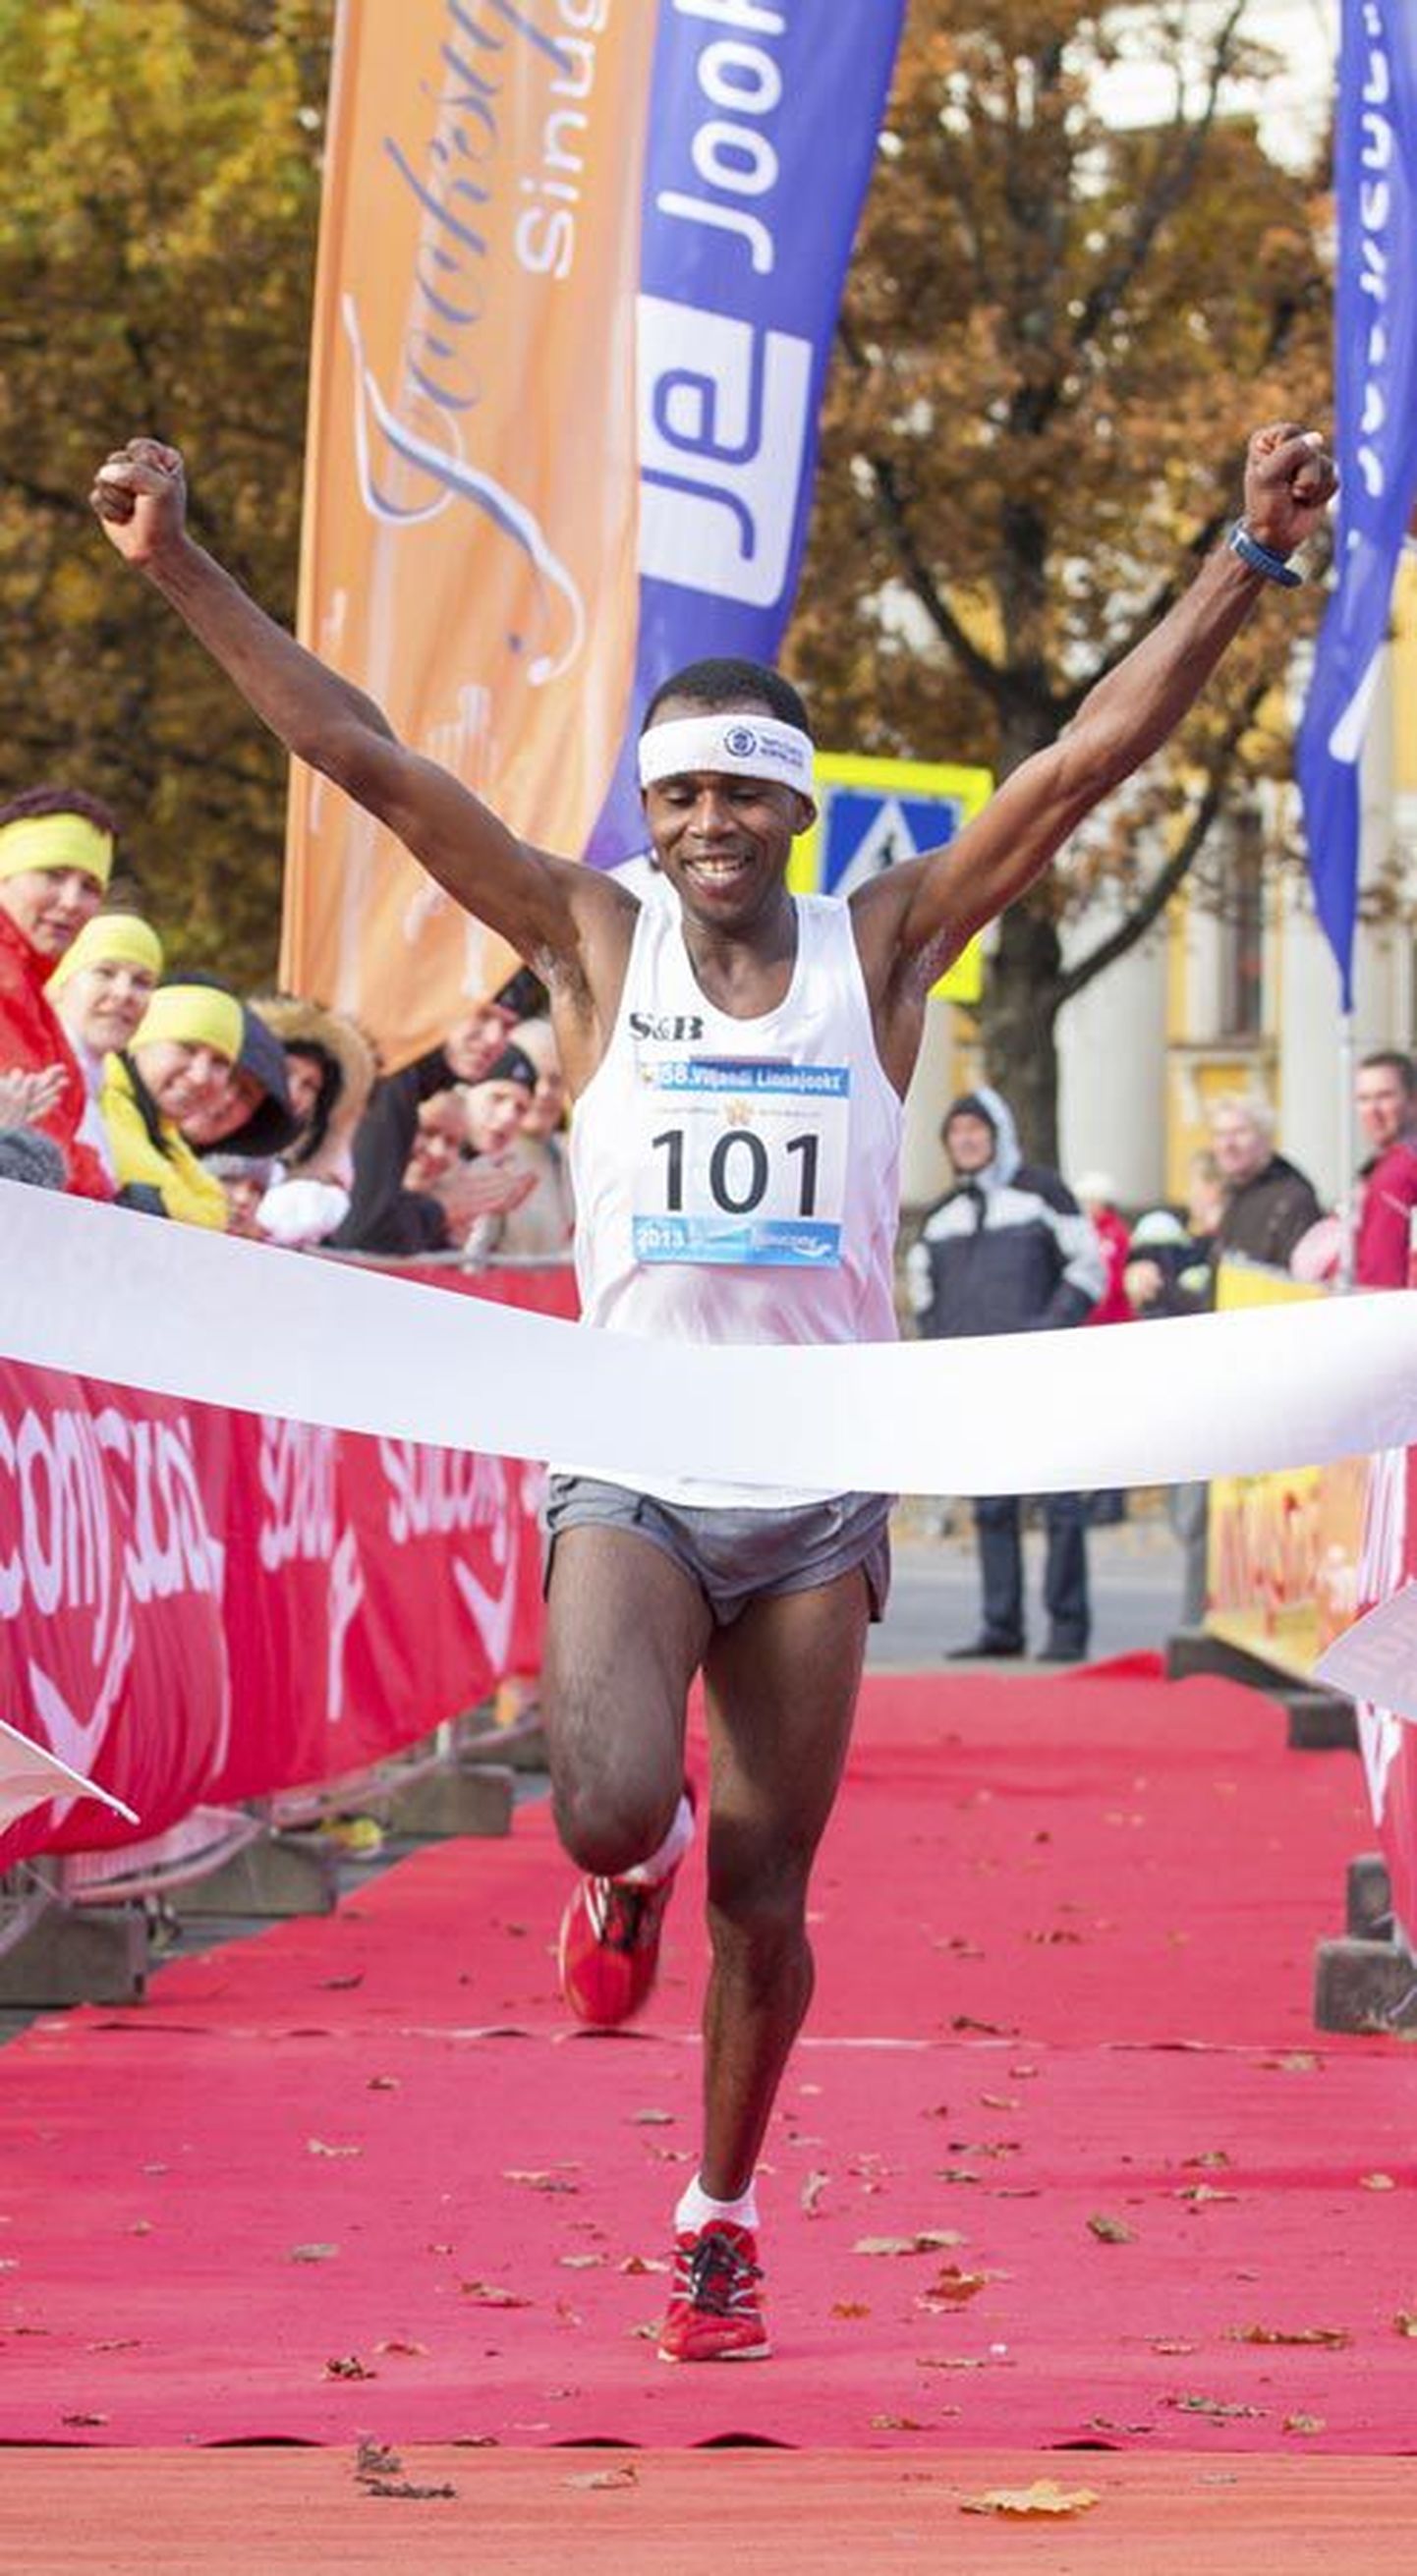 58. Viljandi linnajooksu võitis Keeniast pärit Ibrahim Mukunga uue rajarekordiga, läbides distantsi 41 minuti ja 50 sekundiga.